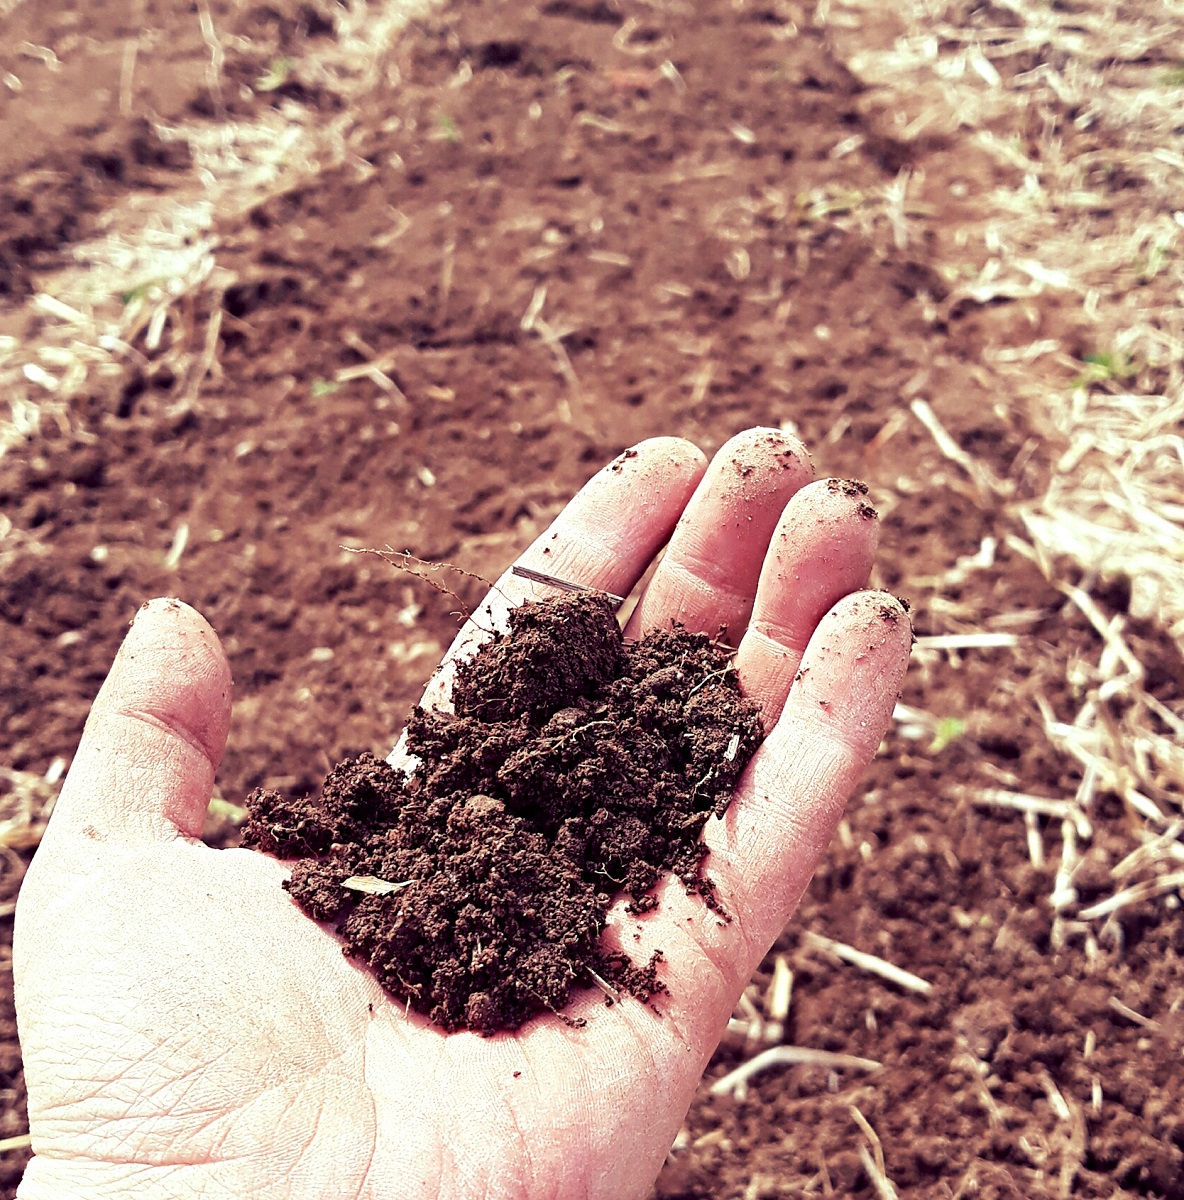 Cultivating Soil Health: Garden, Farm, or Homestead